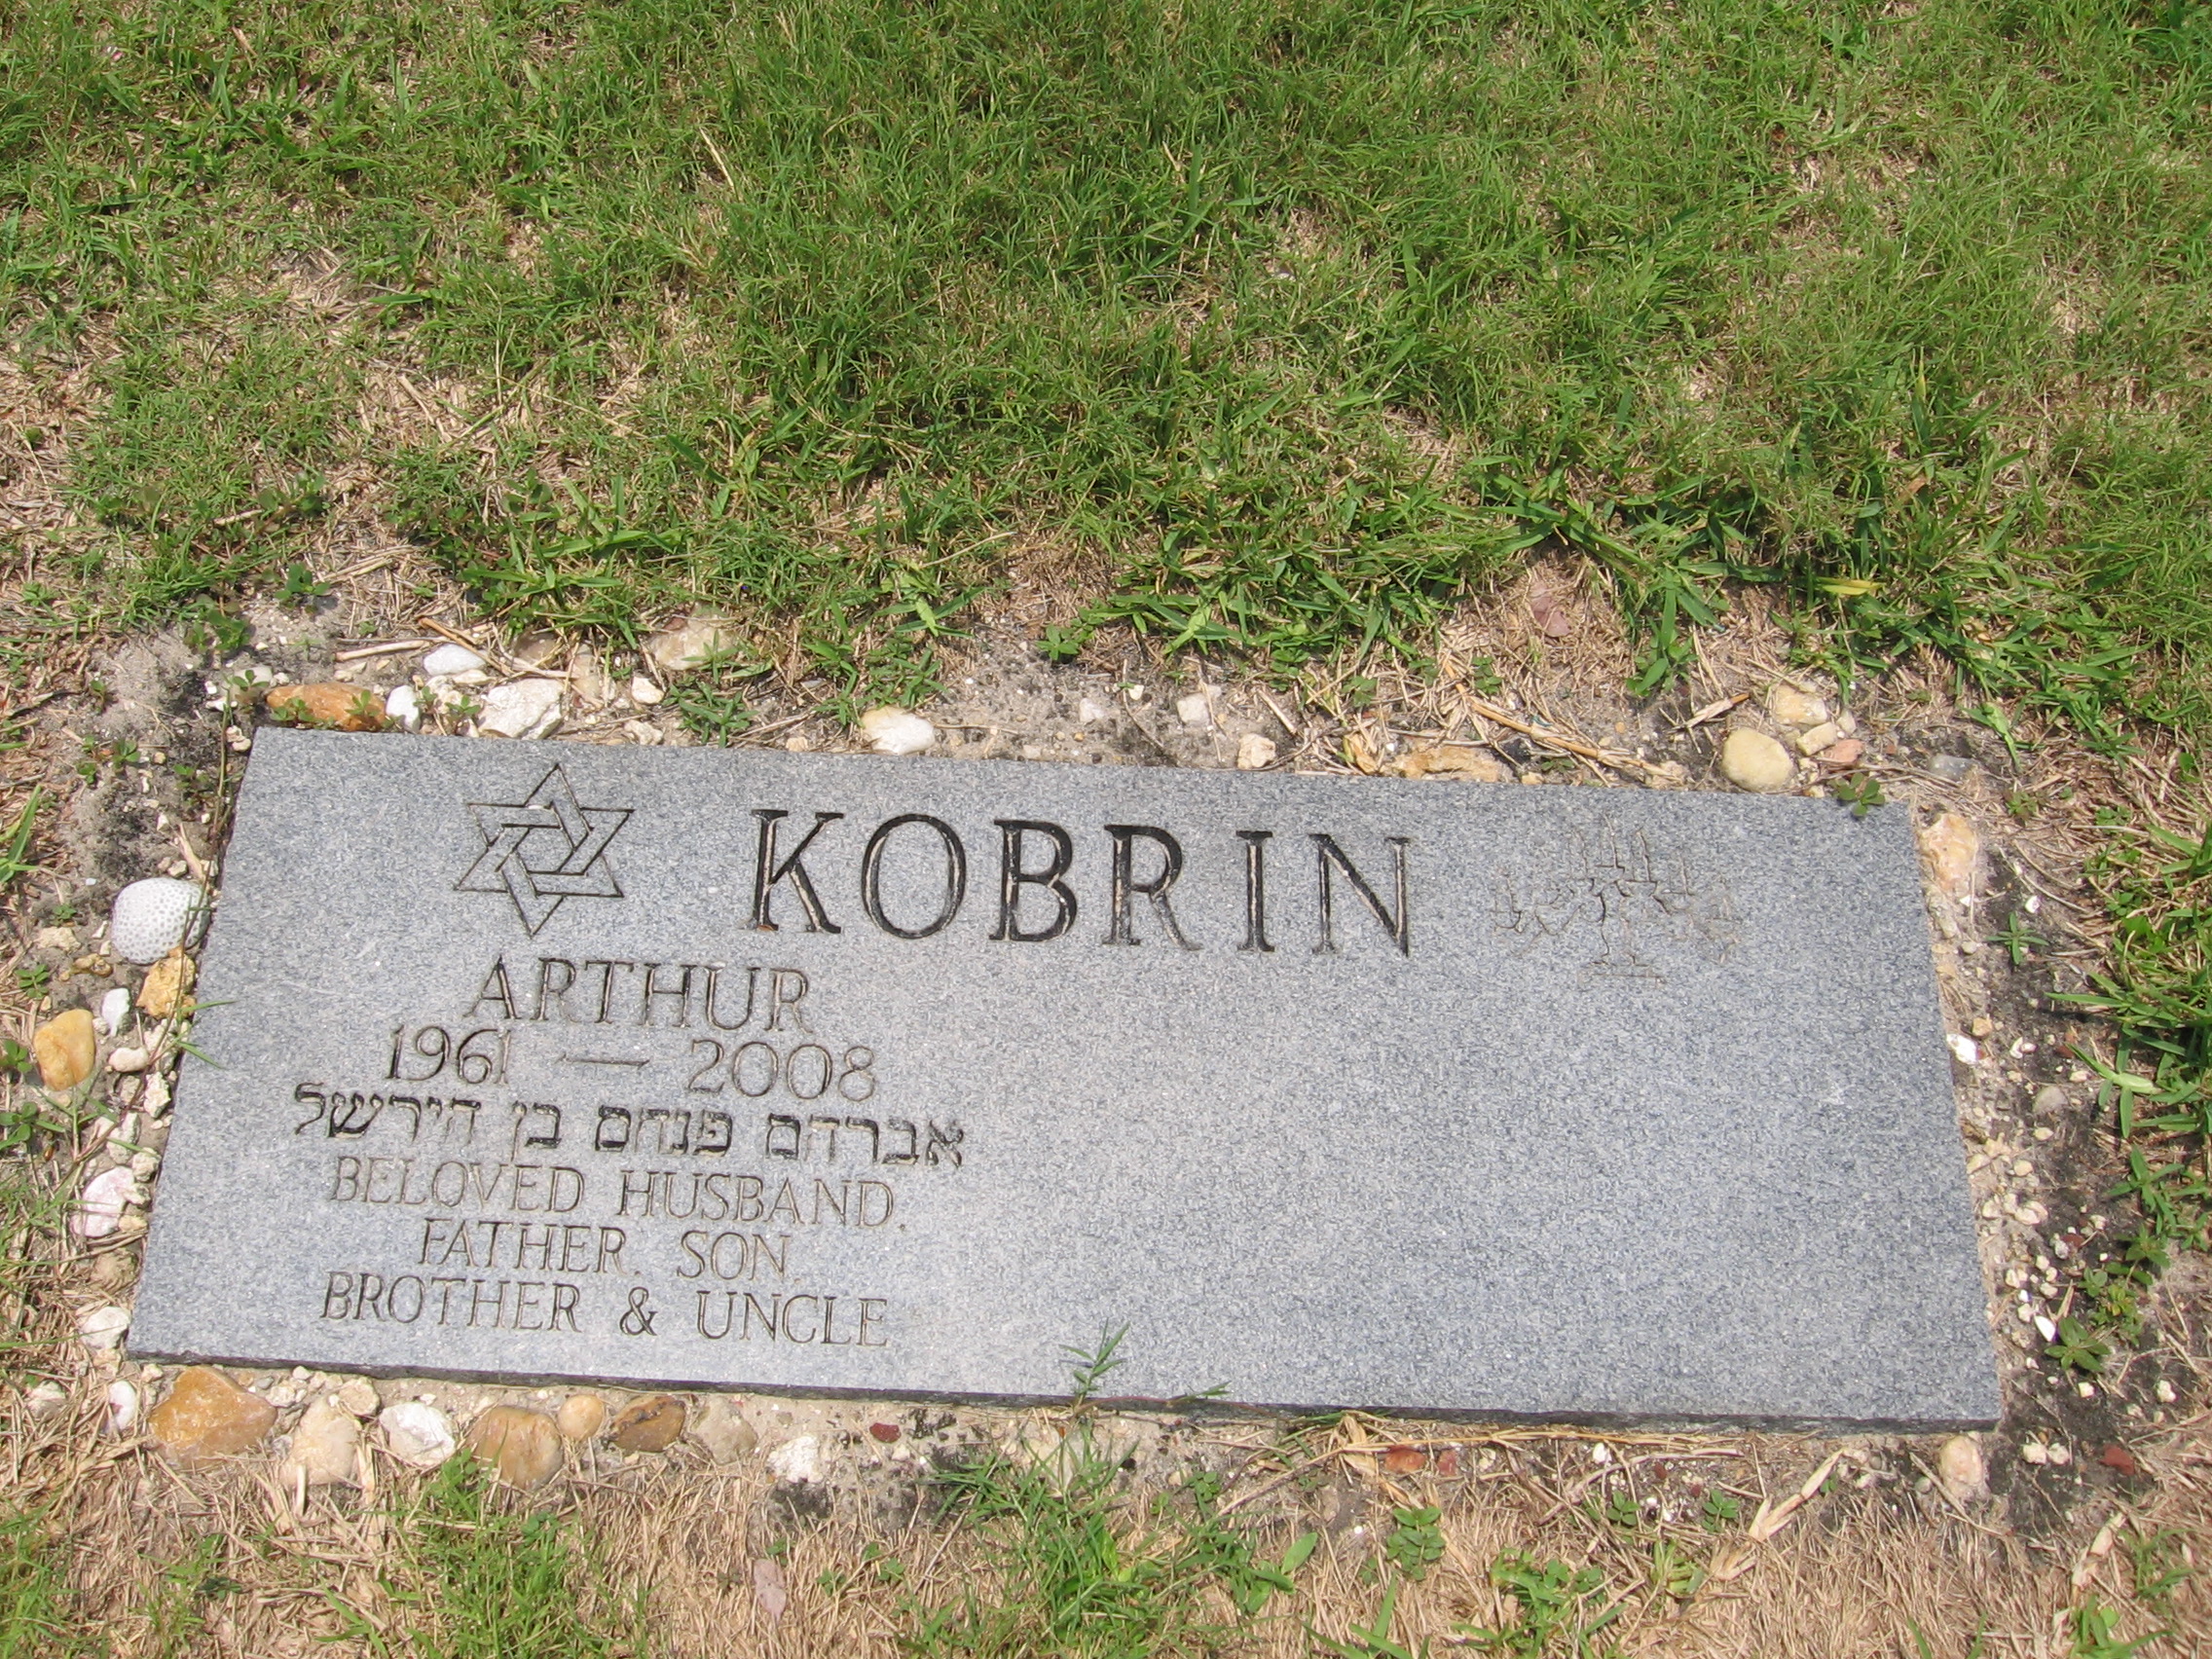 Arthur Kobrin